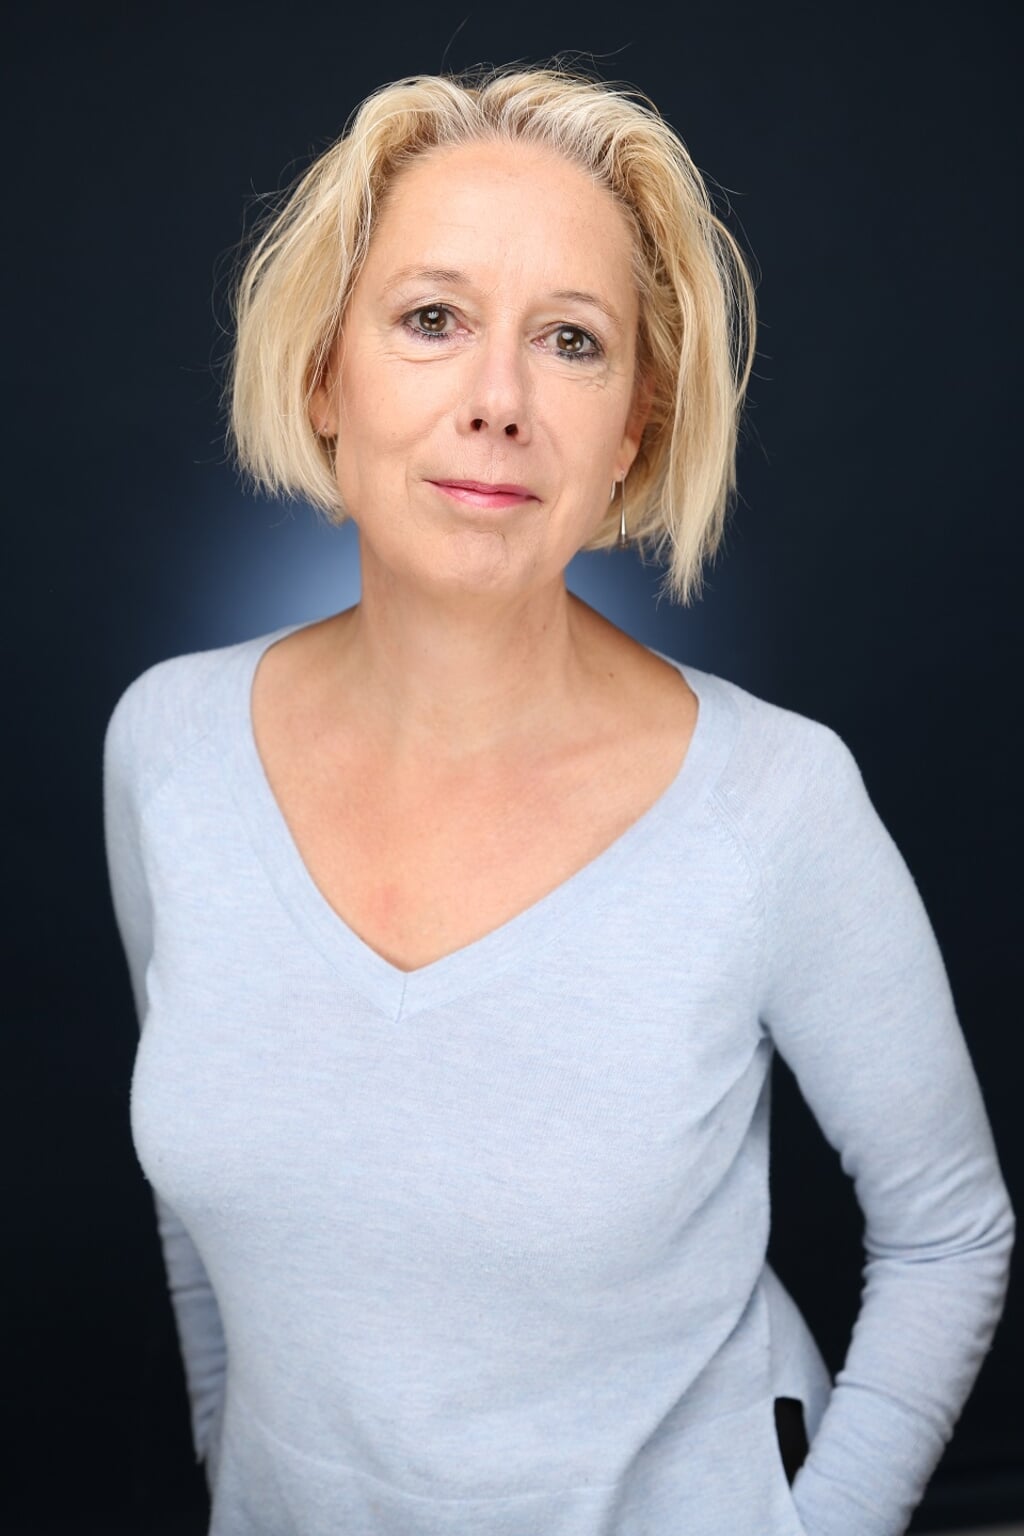 Karin Braamhorst